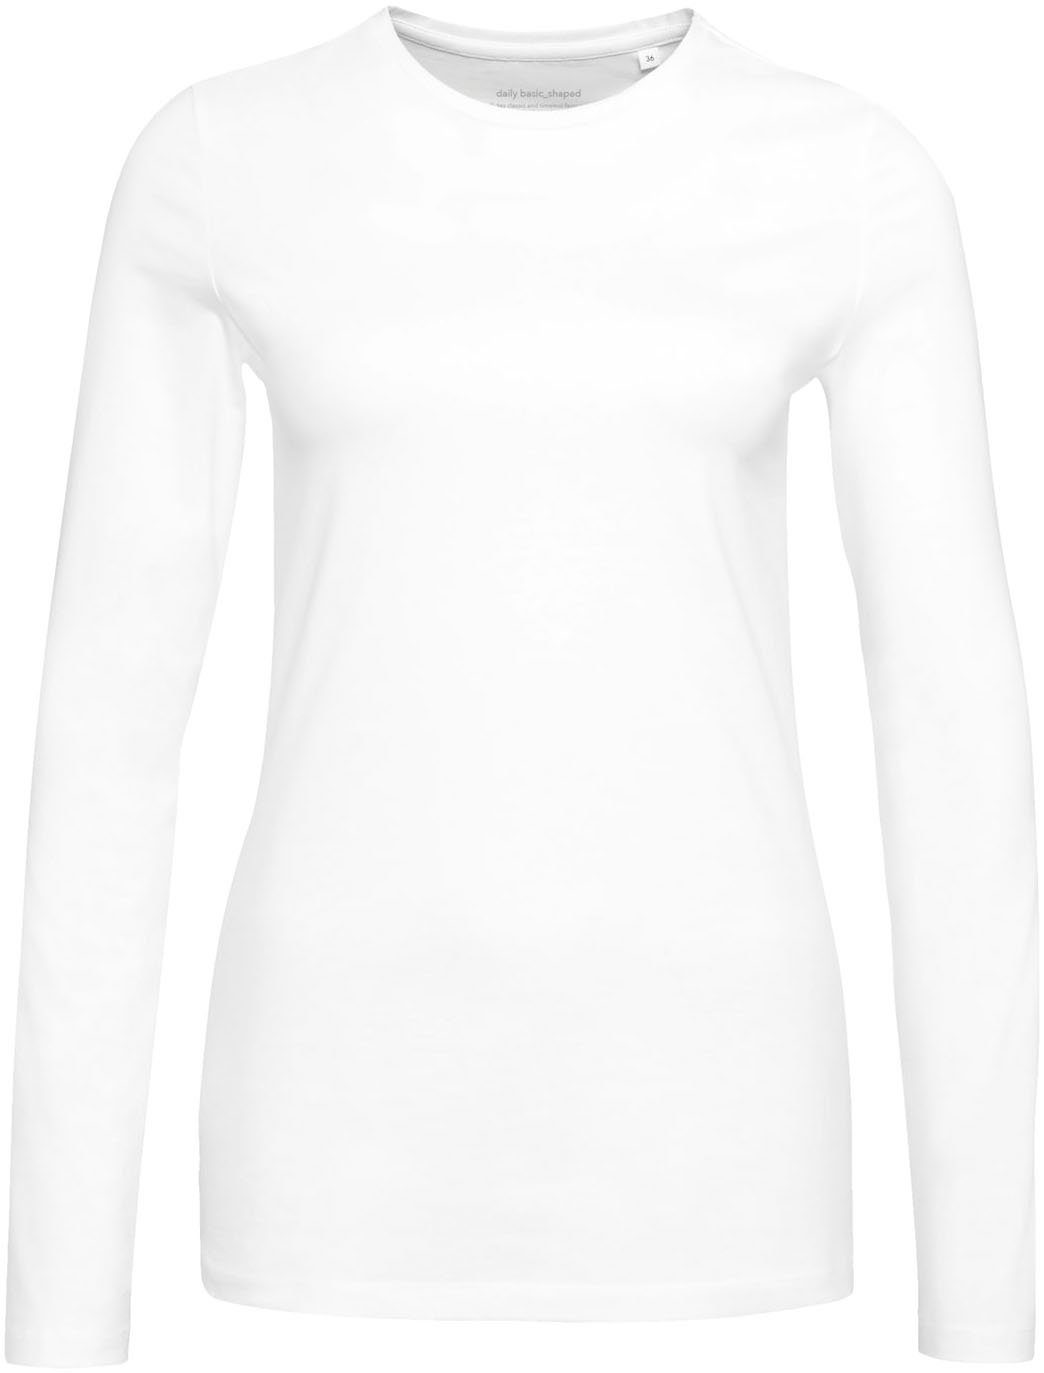 Smilla in cleaner Basic-Form white Langarmshirt OPUS